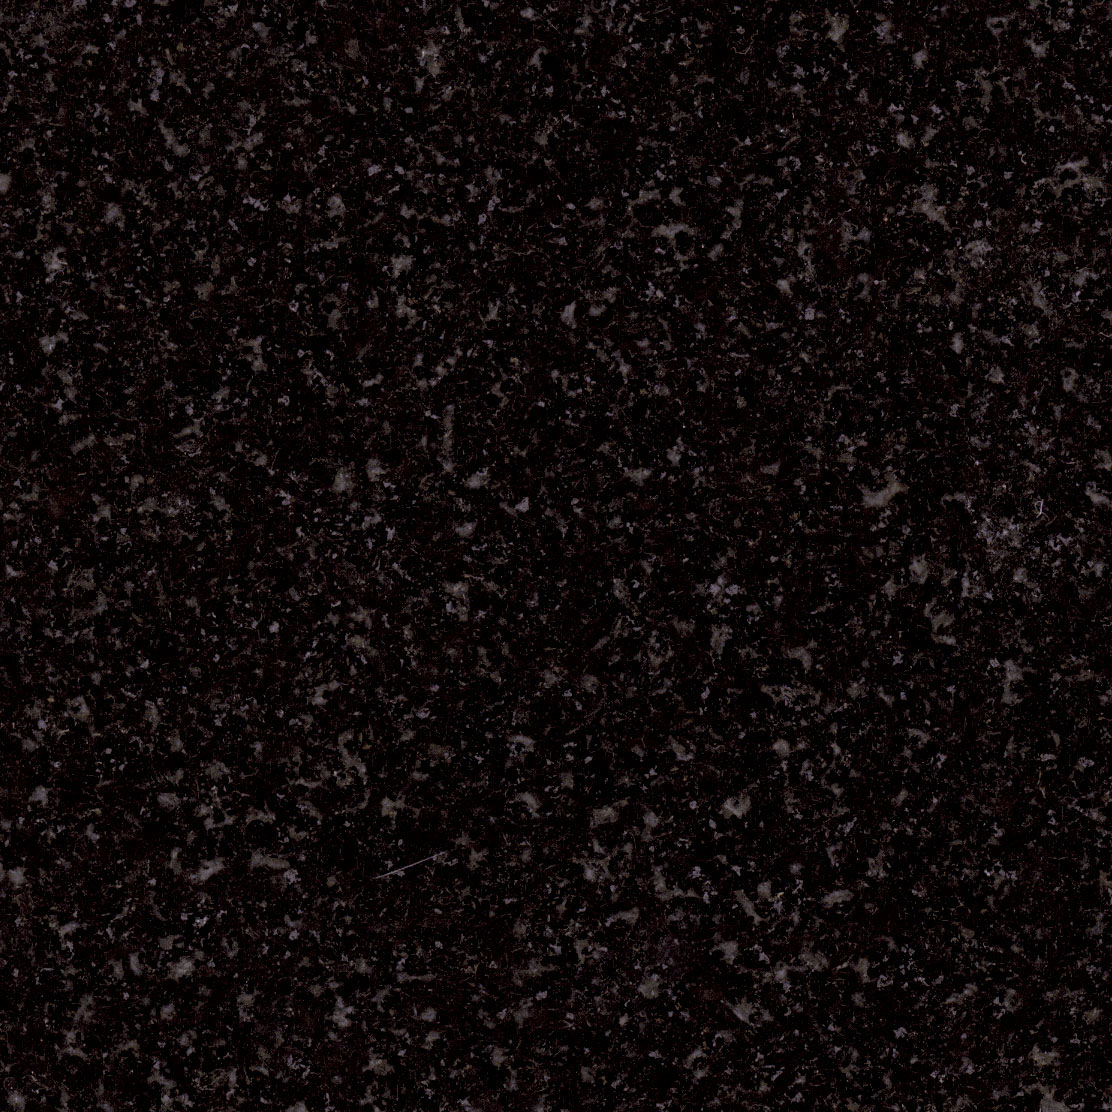 Absolute Black Granite Countertop